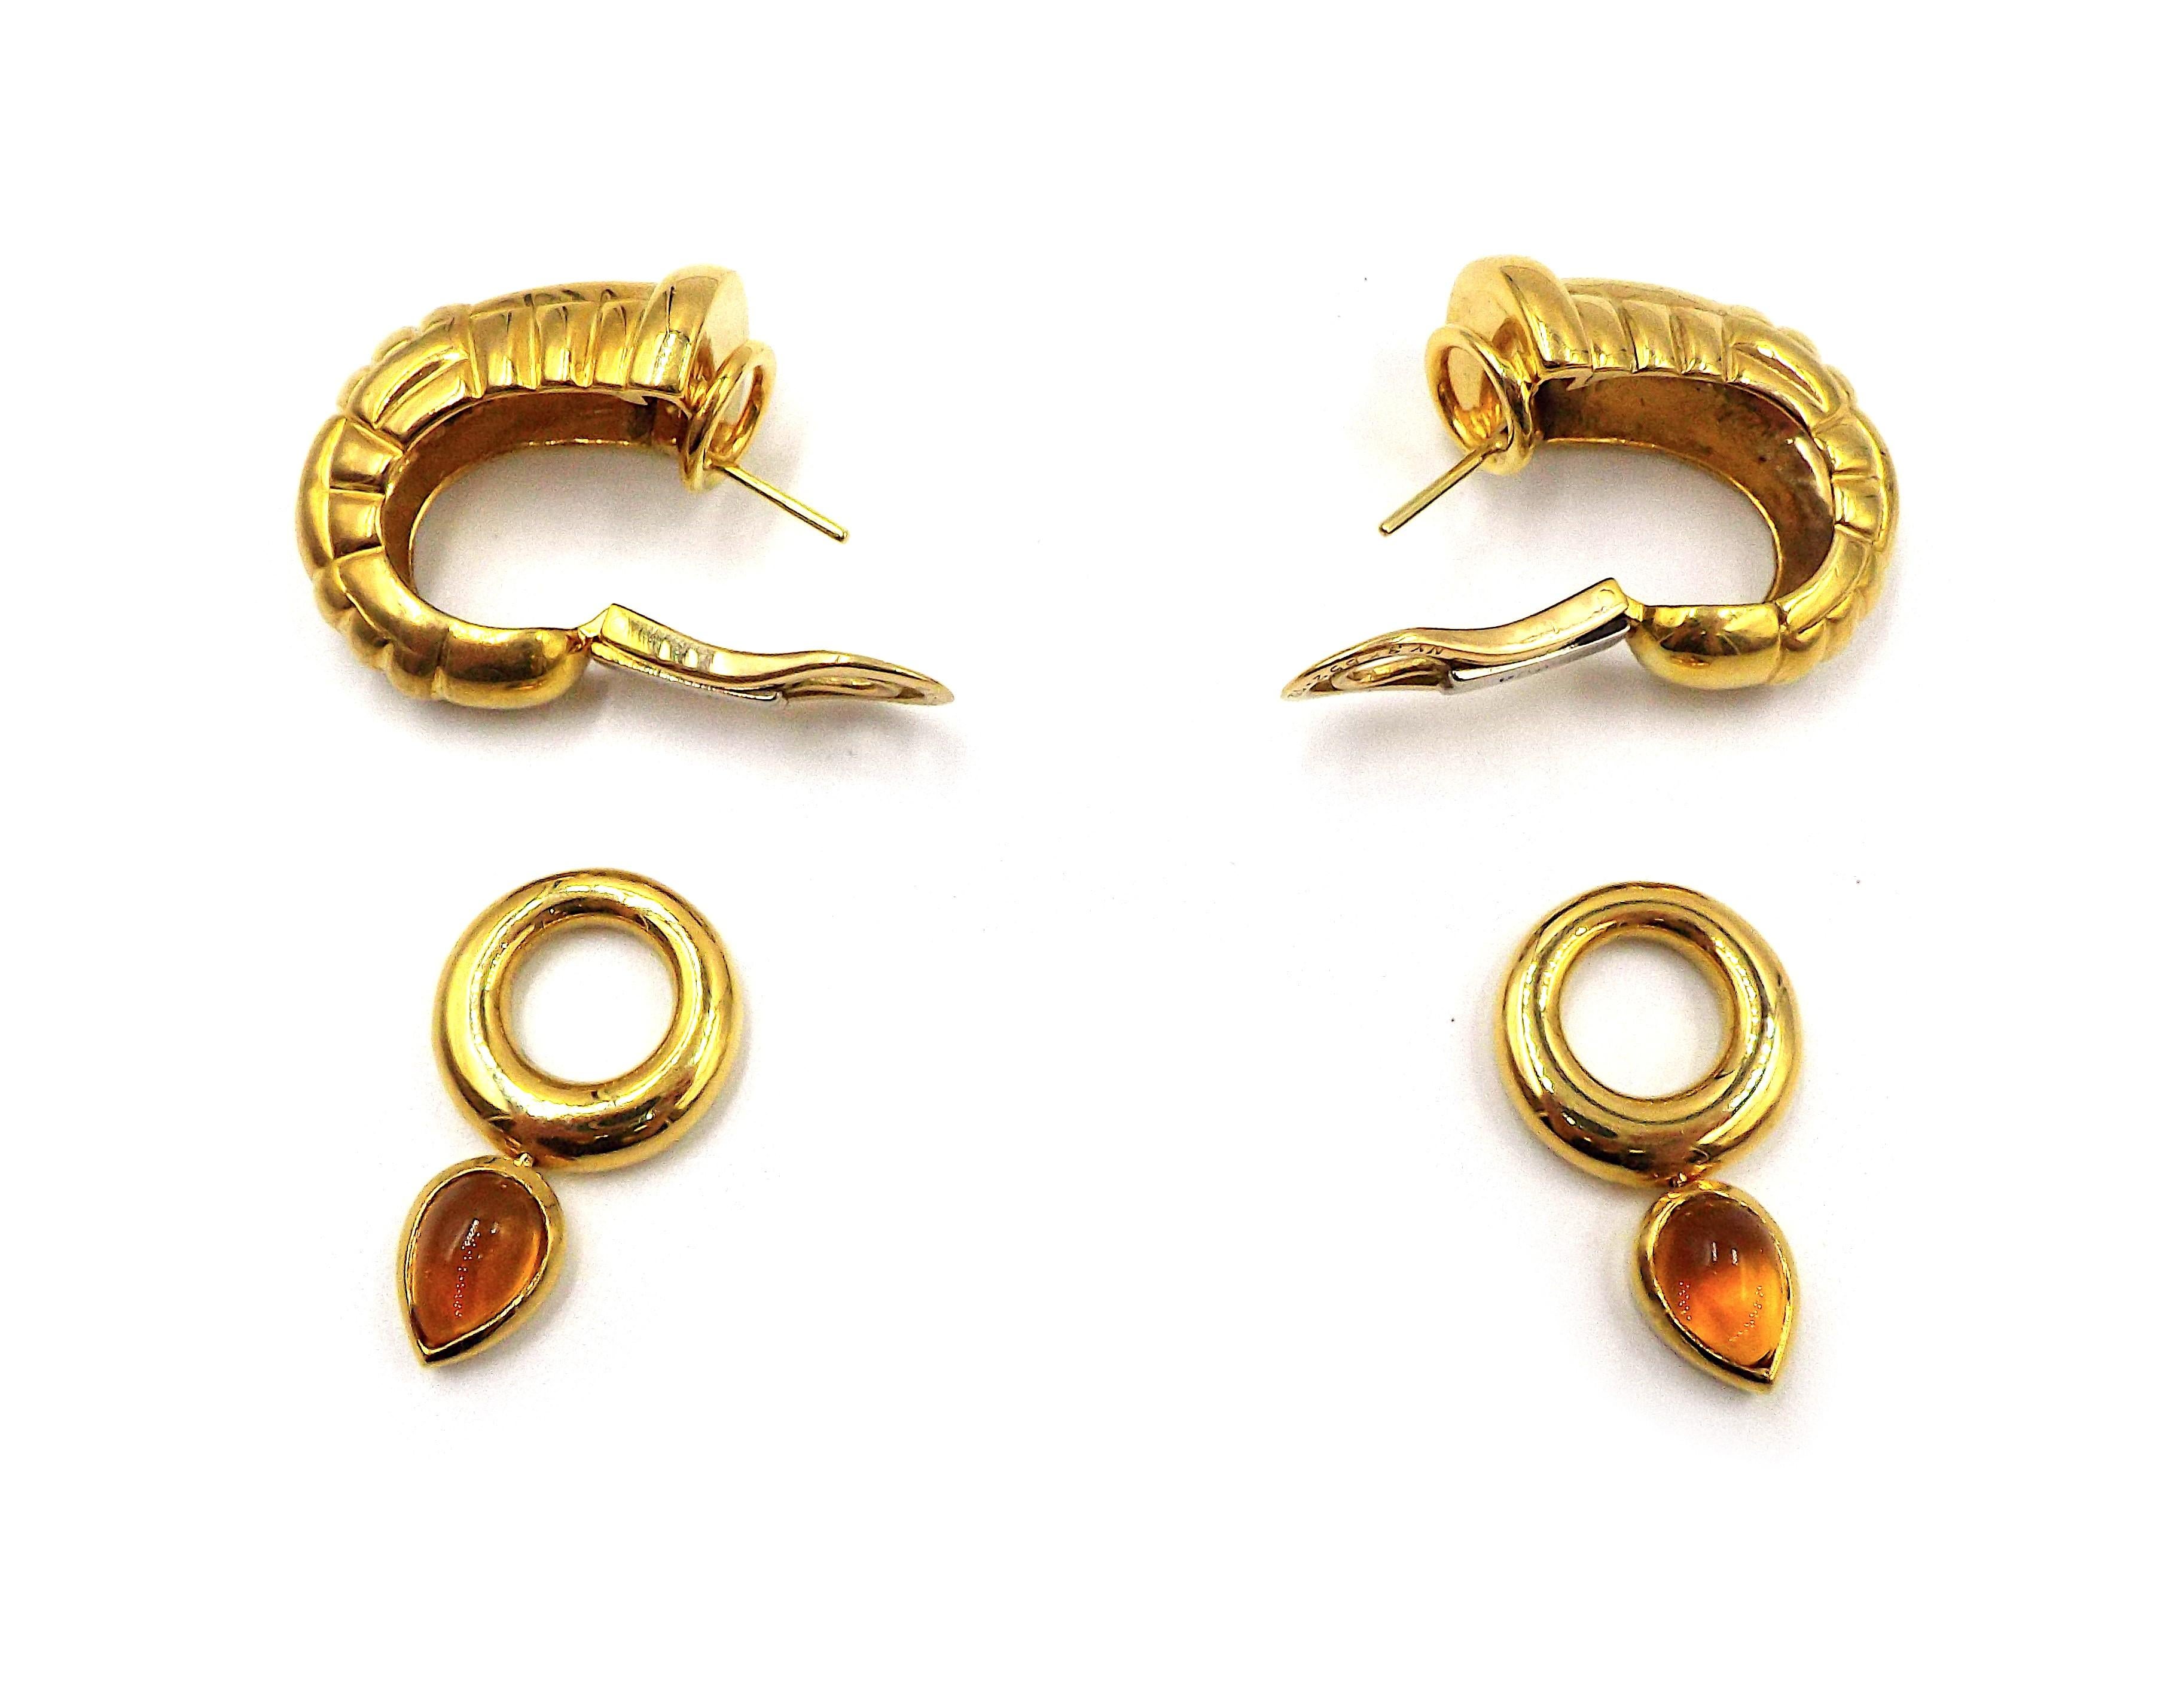 Une paire de boucles d'oreilles vintage en or de Van Cleef & Arpels. De plus petits anneaux avec des citrines cabochons en forme de poire sont amovibles. Chaque boucle d'oreille pèse 14 grammes, les dimensions sont de 1 5/8 